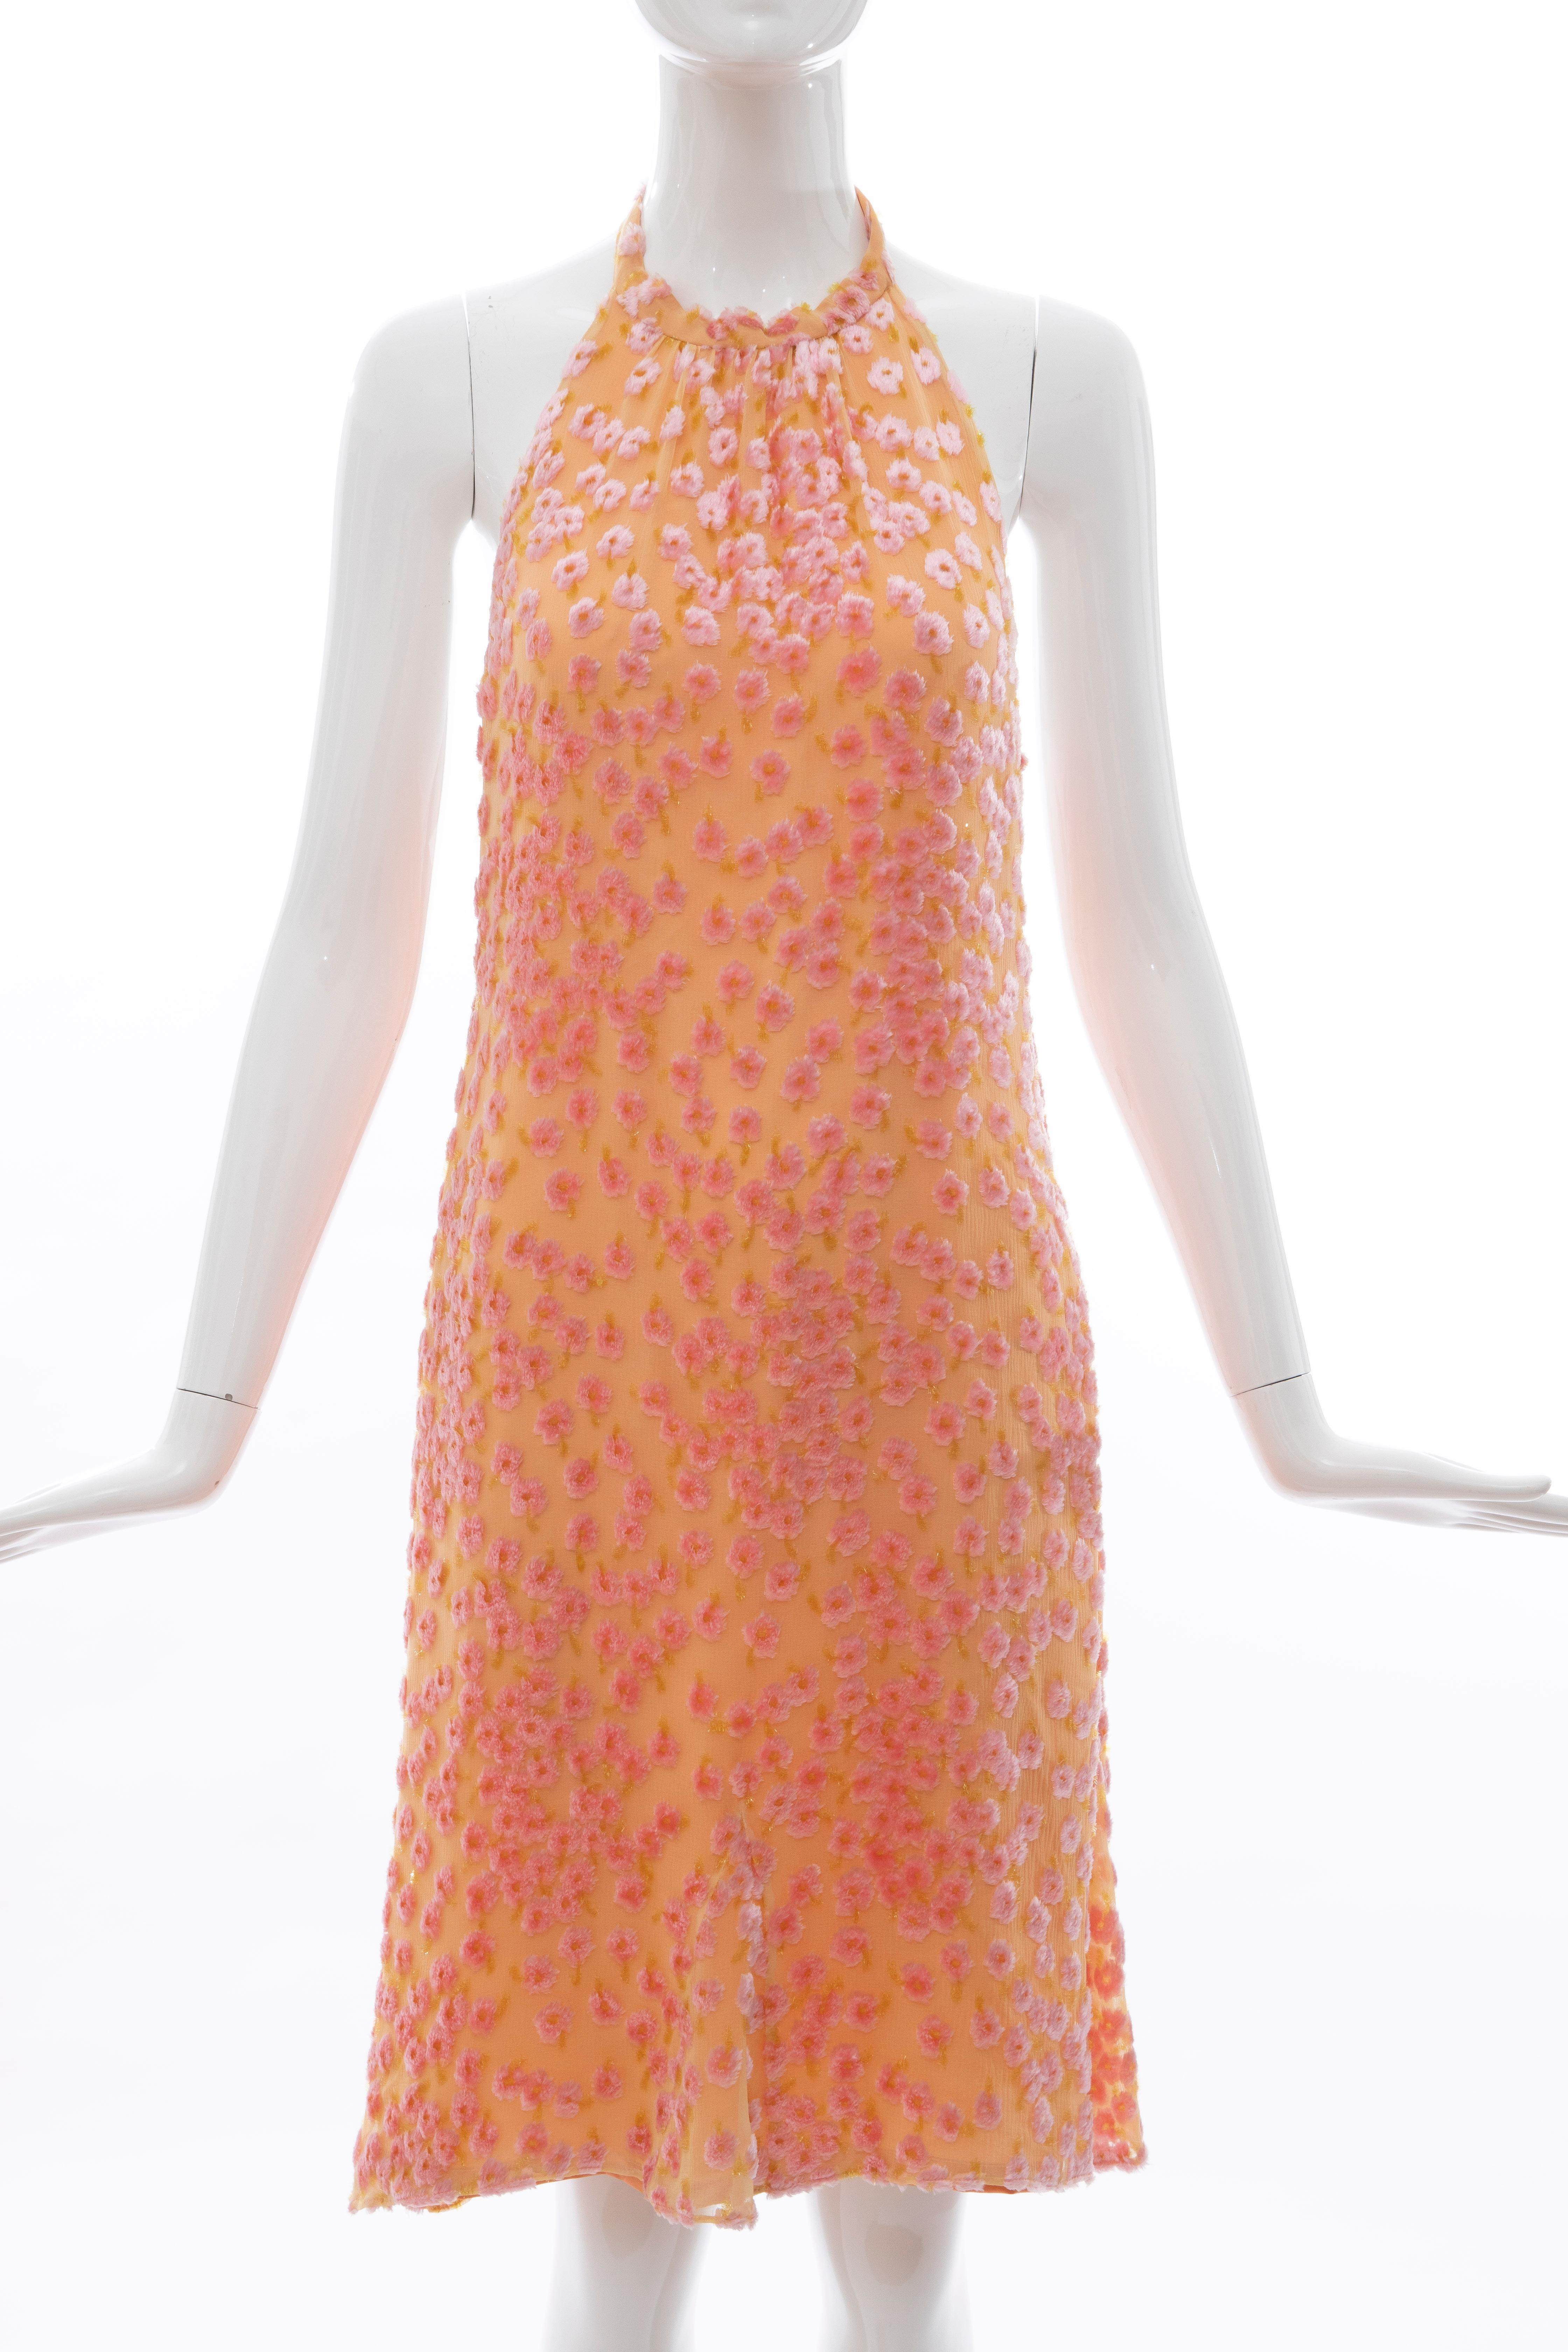 Chanel Tangerine & Pink Voided Silk Chiffon Velvet Halter Dress, Cruise 2001 For Sale 11